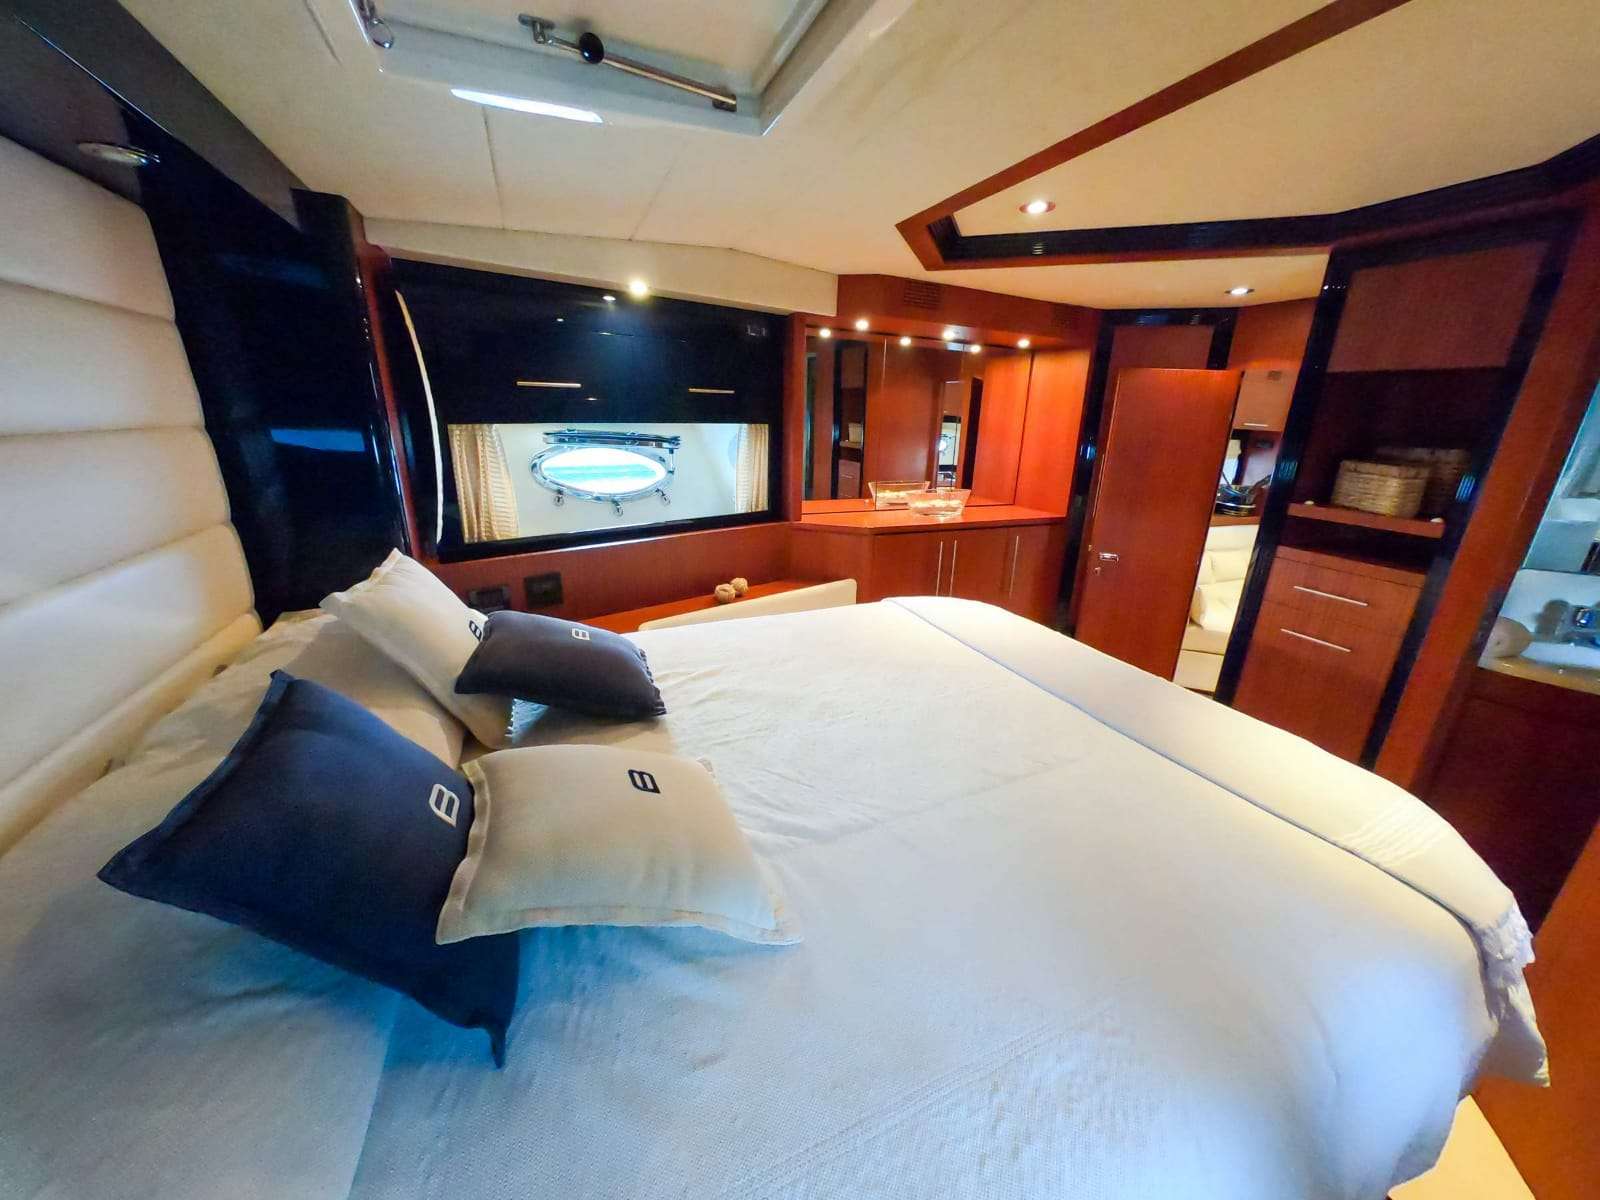 BABLUC Yacht Charter - Vip Cabin